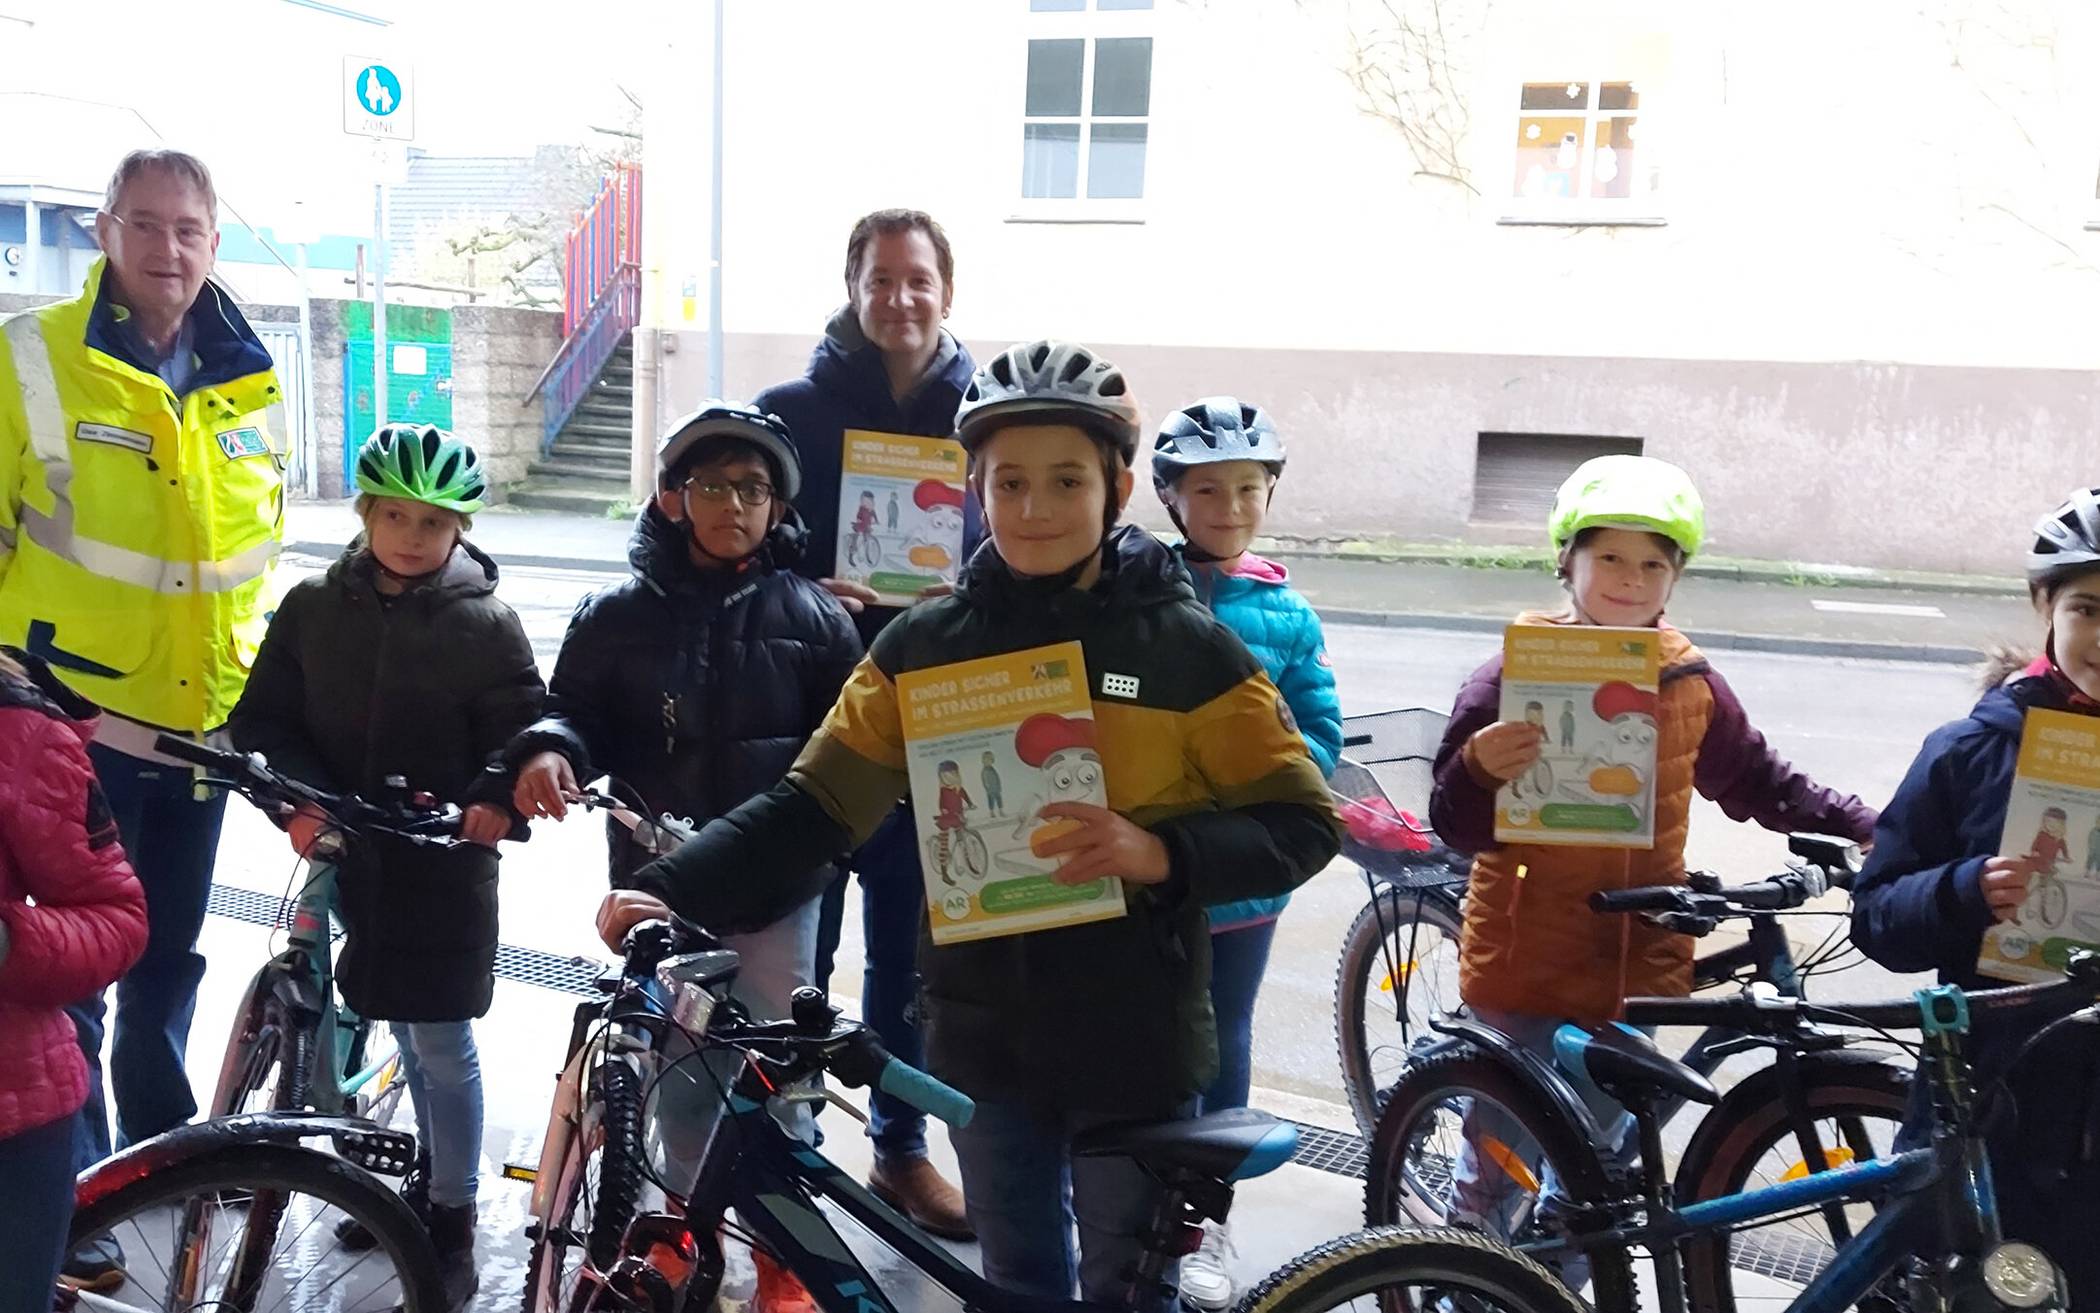 Kreisverkehrswacht verteilt Übungsheft „Kinder sicher im Straßenverkehr“ zur Radfahrausbildung